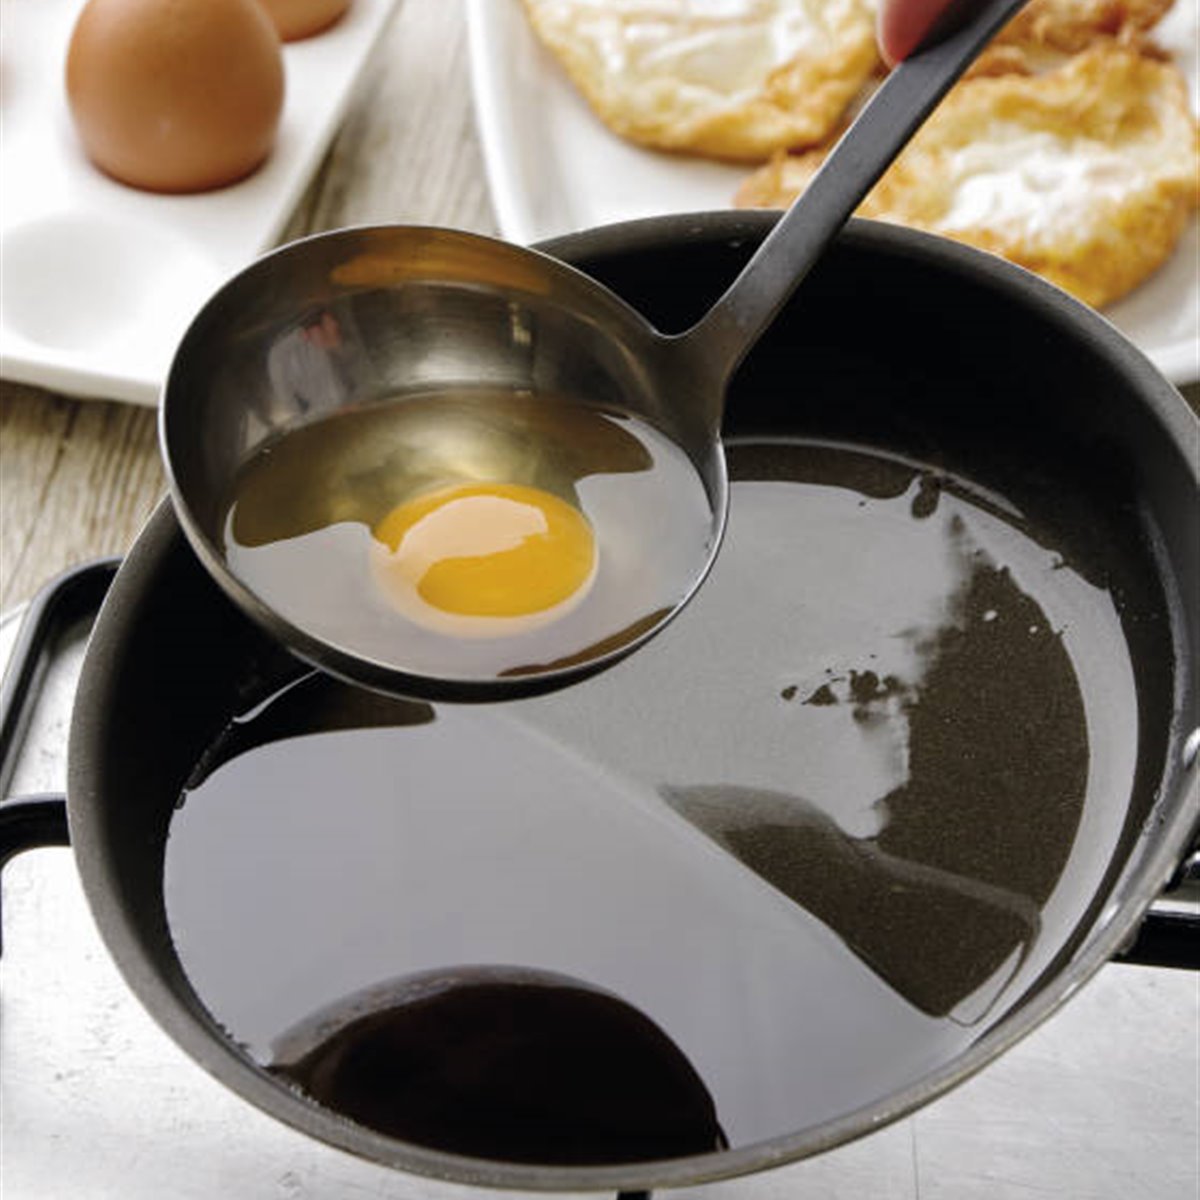 Echando huevo a la sartén